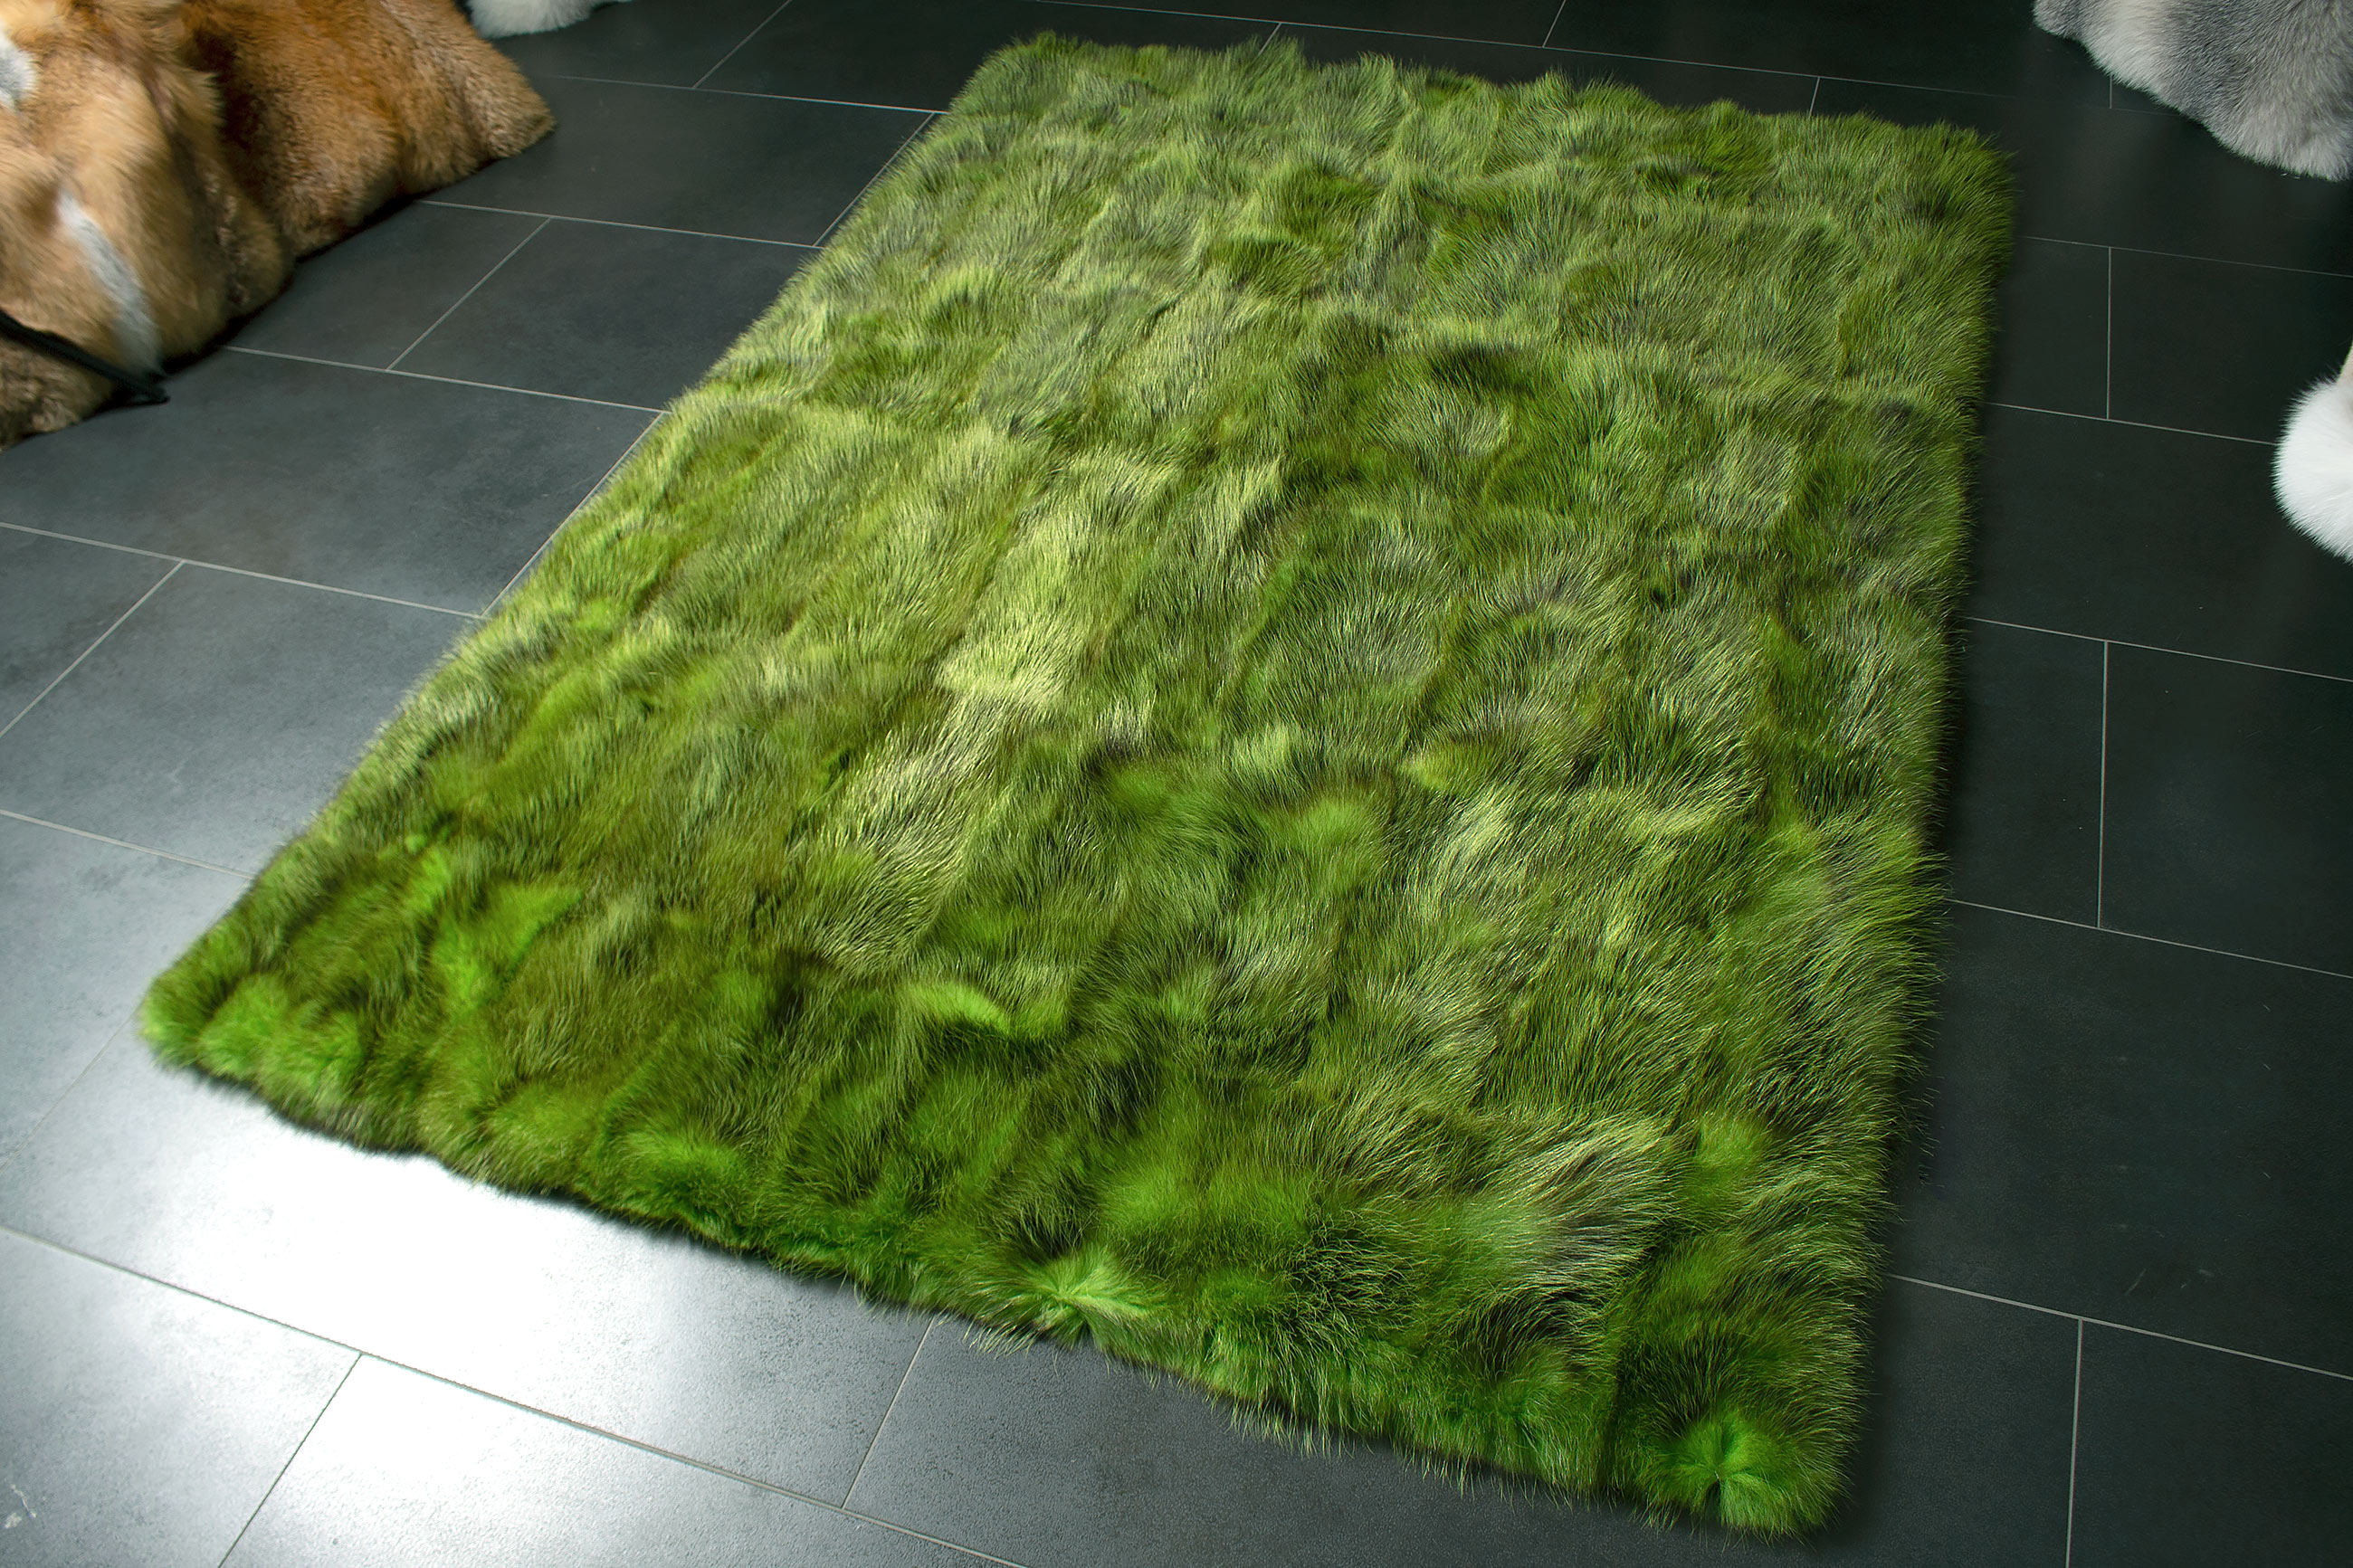 Possum Fur Carpet made with Genuine Wild Fur